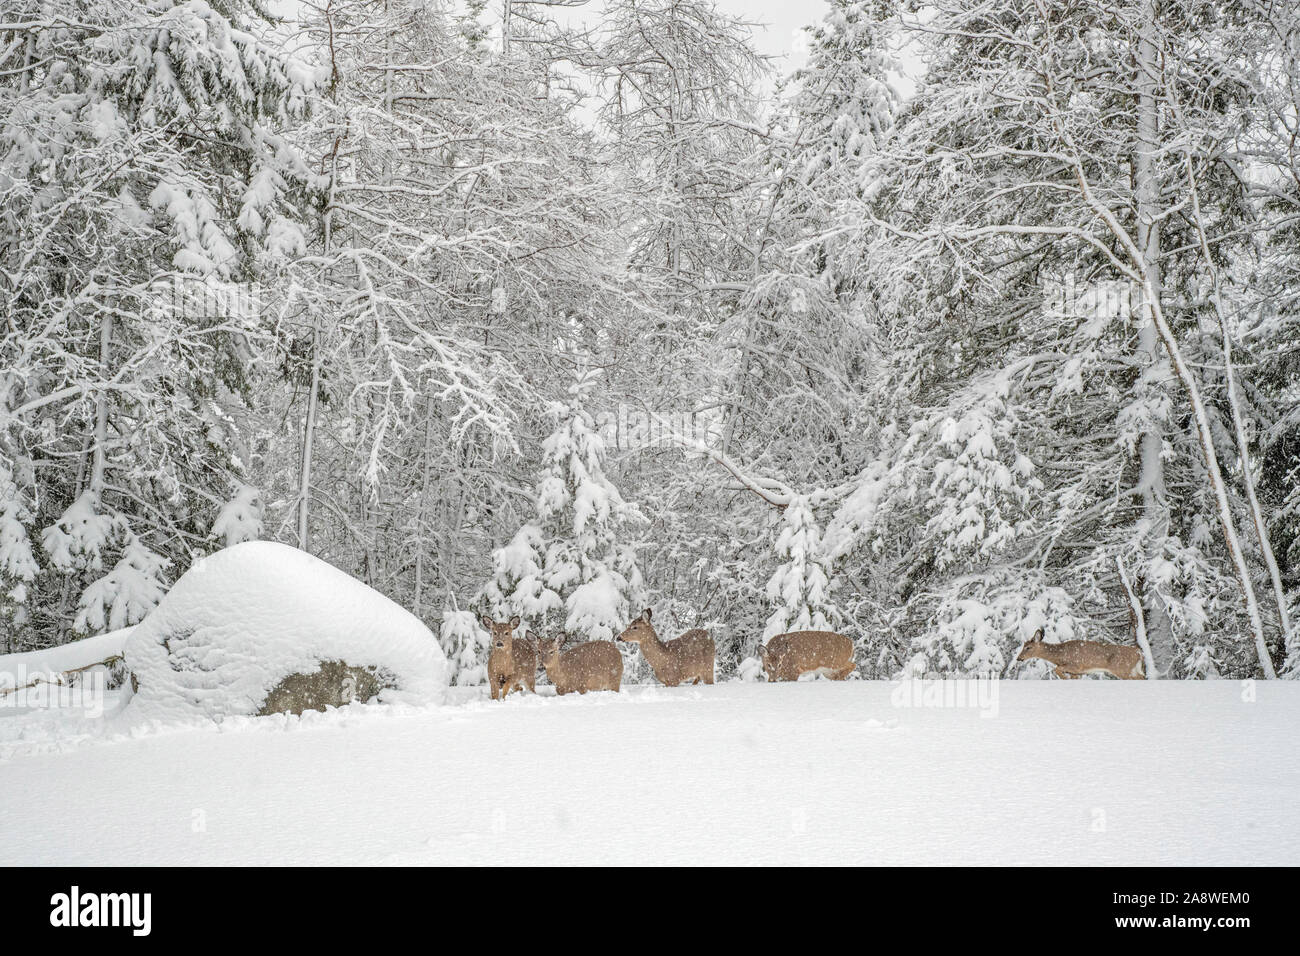 Le cerf de Virginie (Odocoileus virginianus) à l'étranger pendant un blizzard. L'Acadia National Park, Maine, USA. Banque D'Images